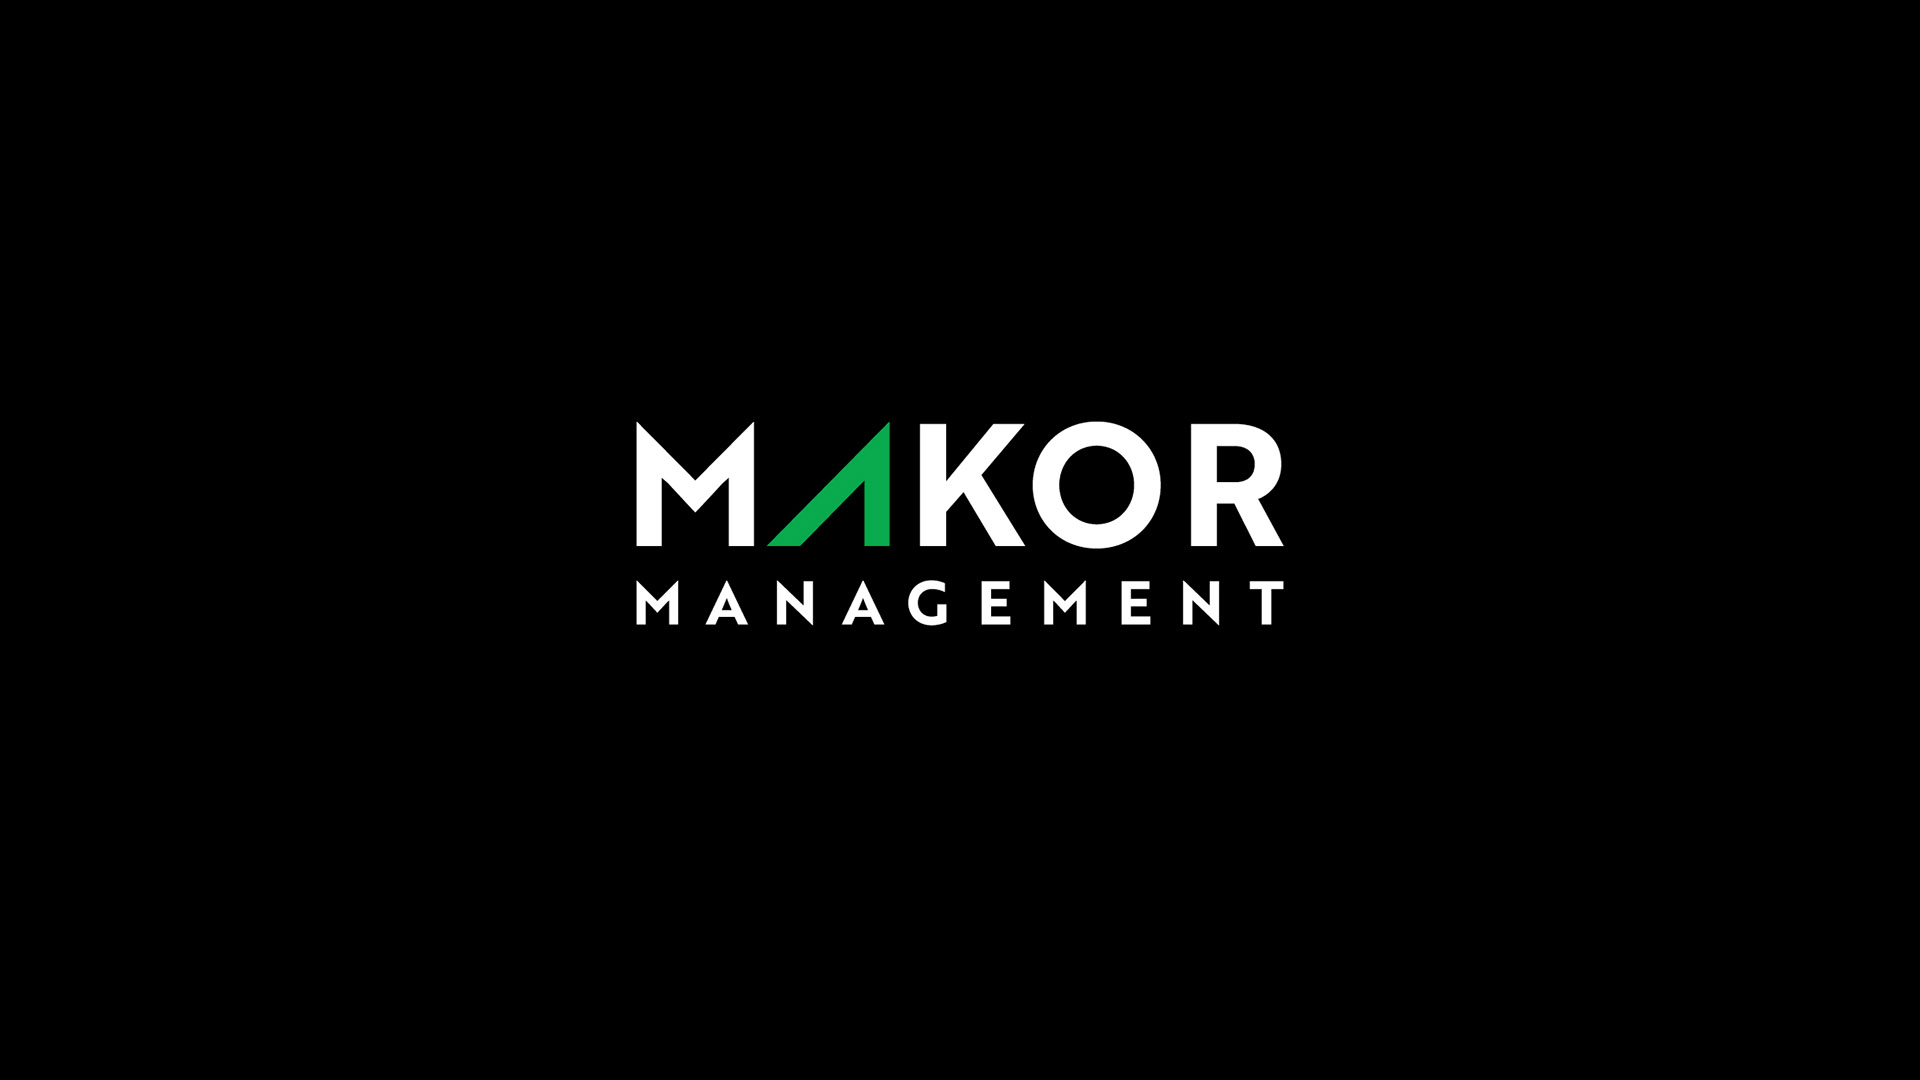 makor management logo on black